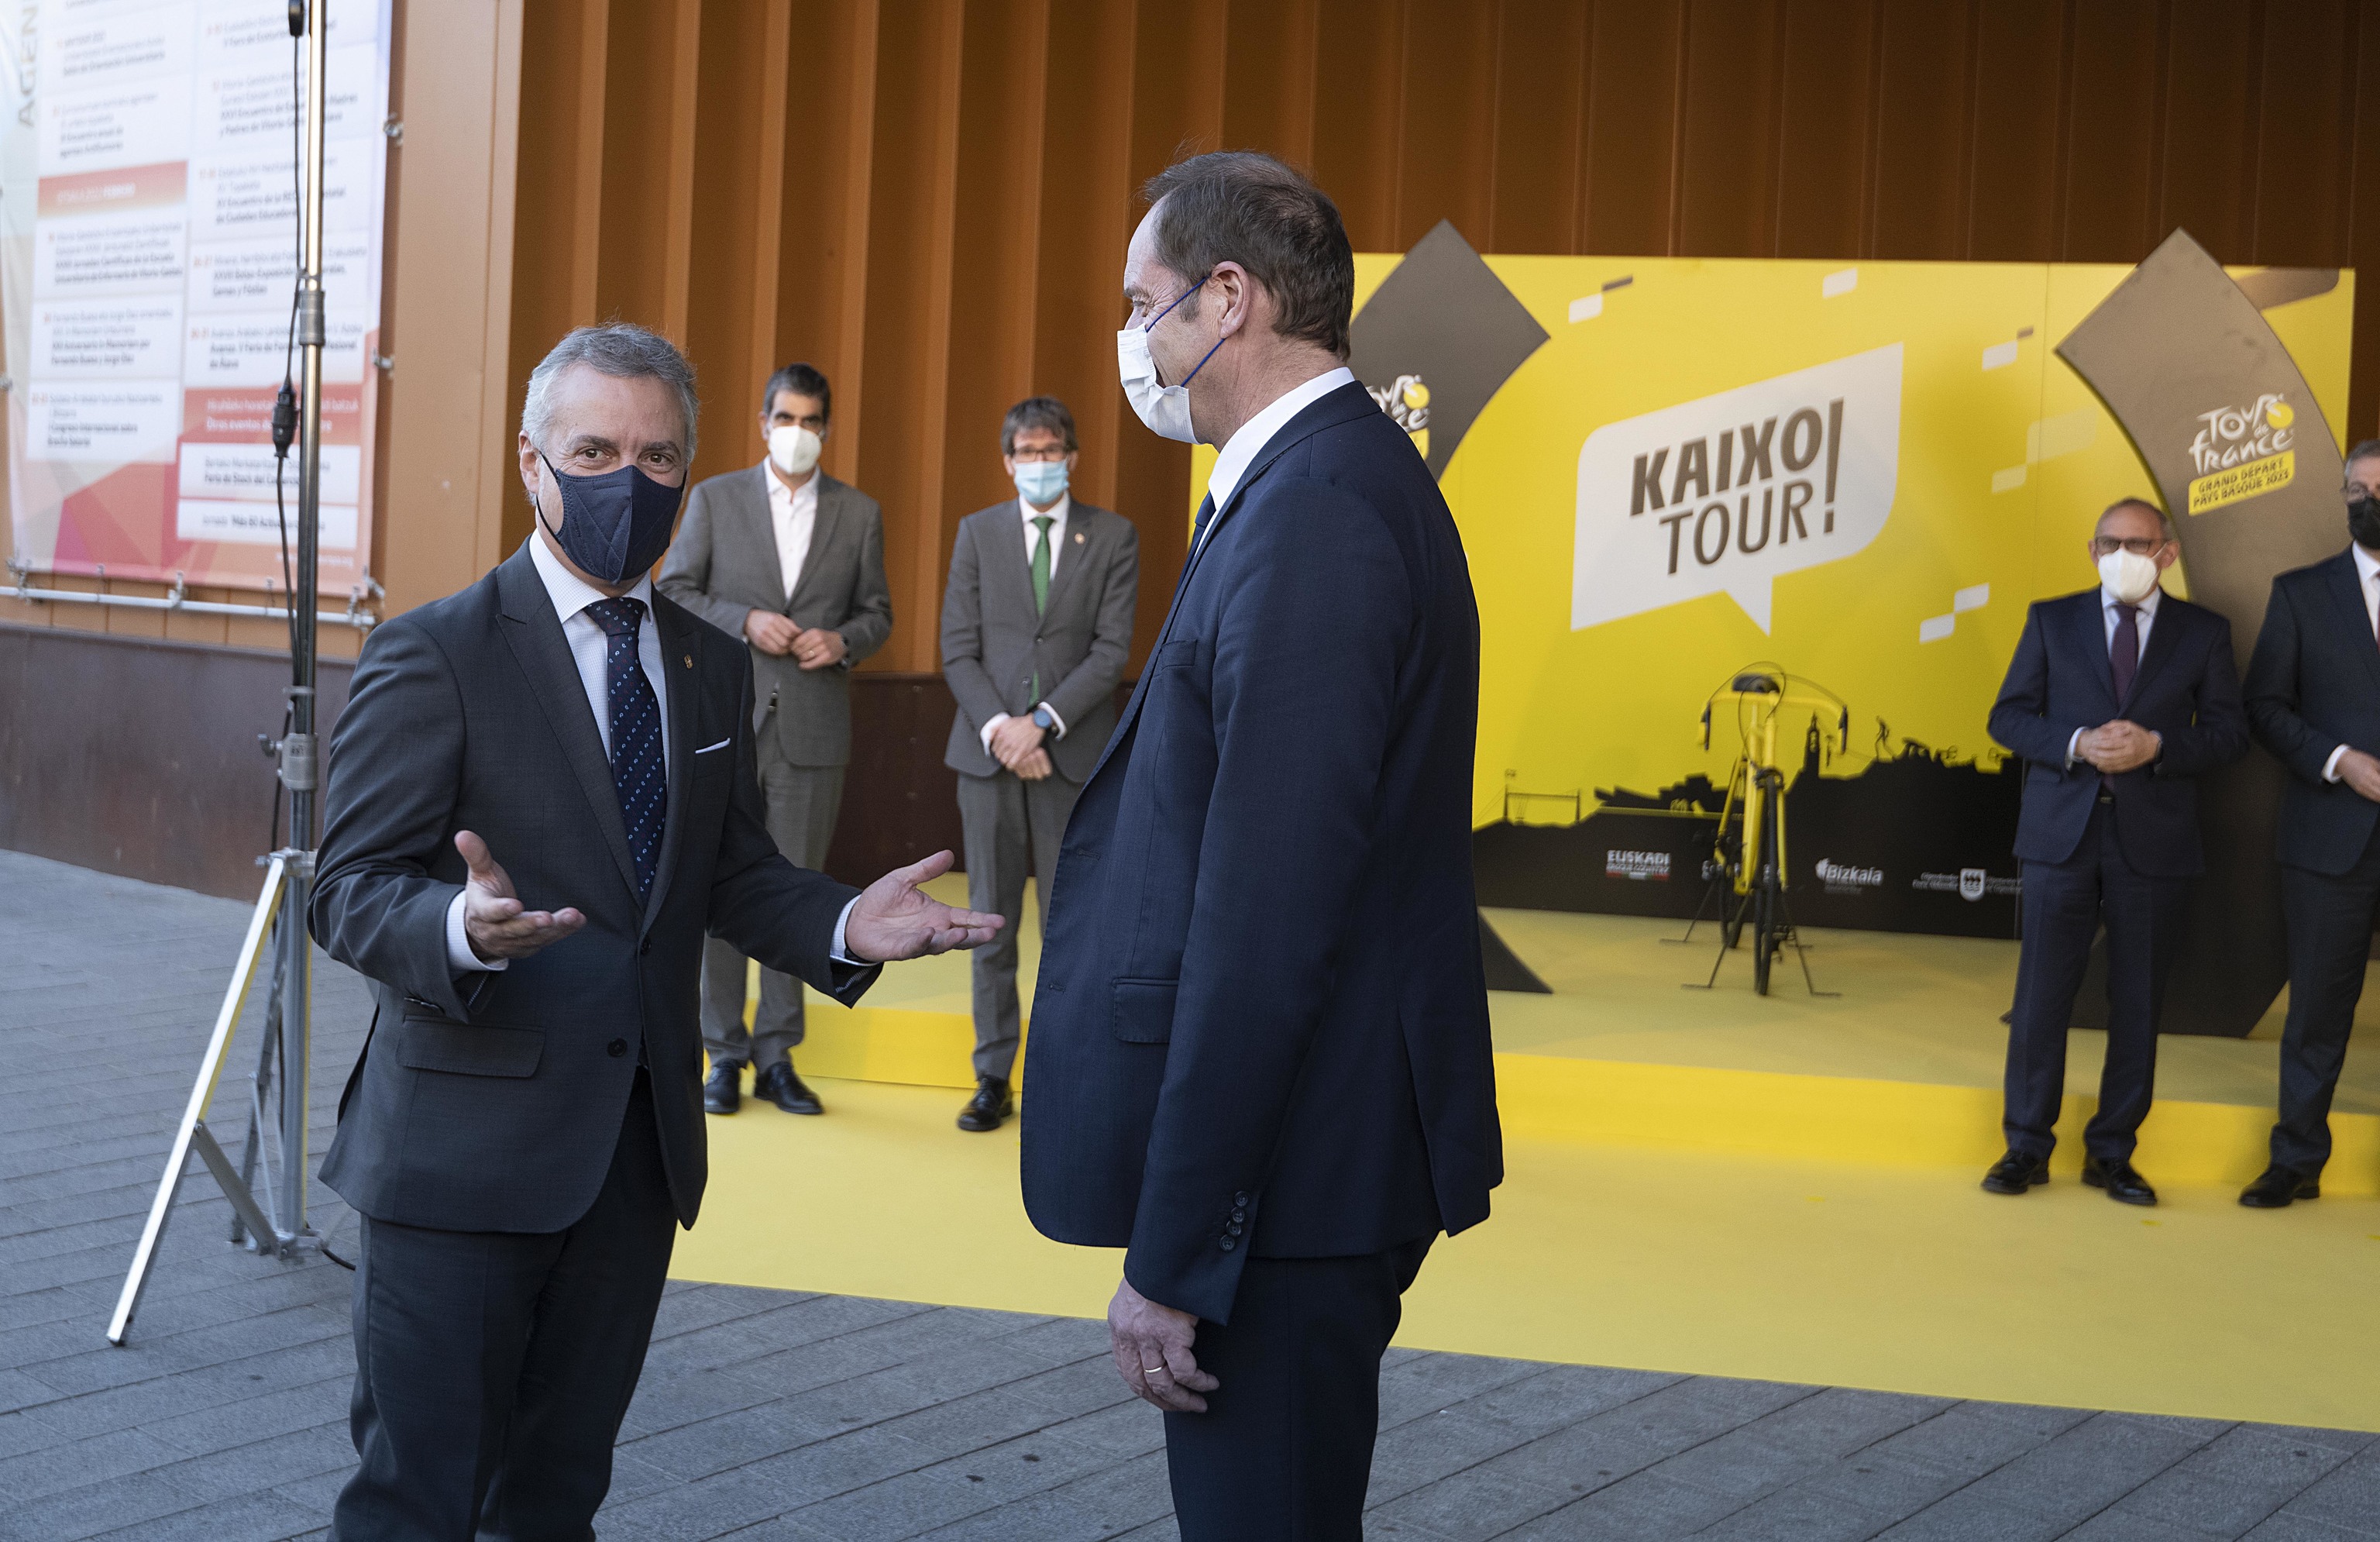 El lehendakari conversa con el director del Tour de Francia Christian Prudhomme durante la presentacin de las tres etapas vascas en el palacio Europa de Vitoria.